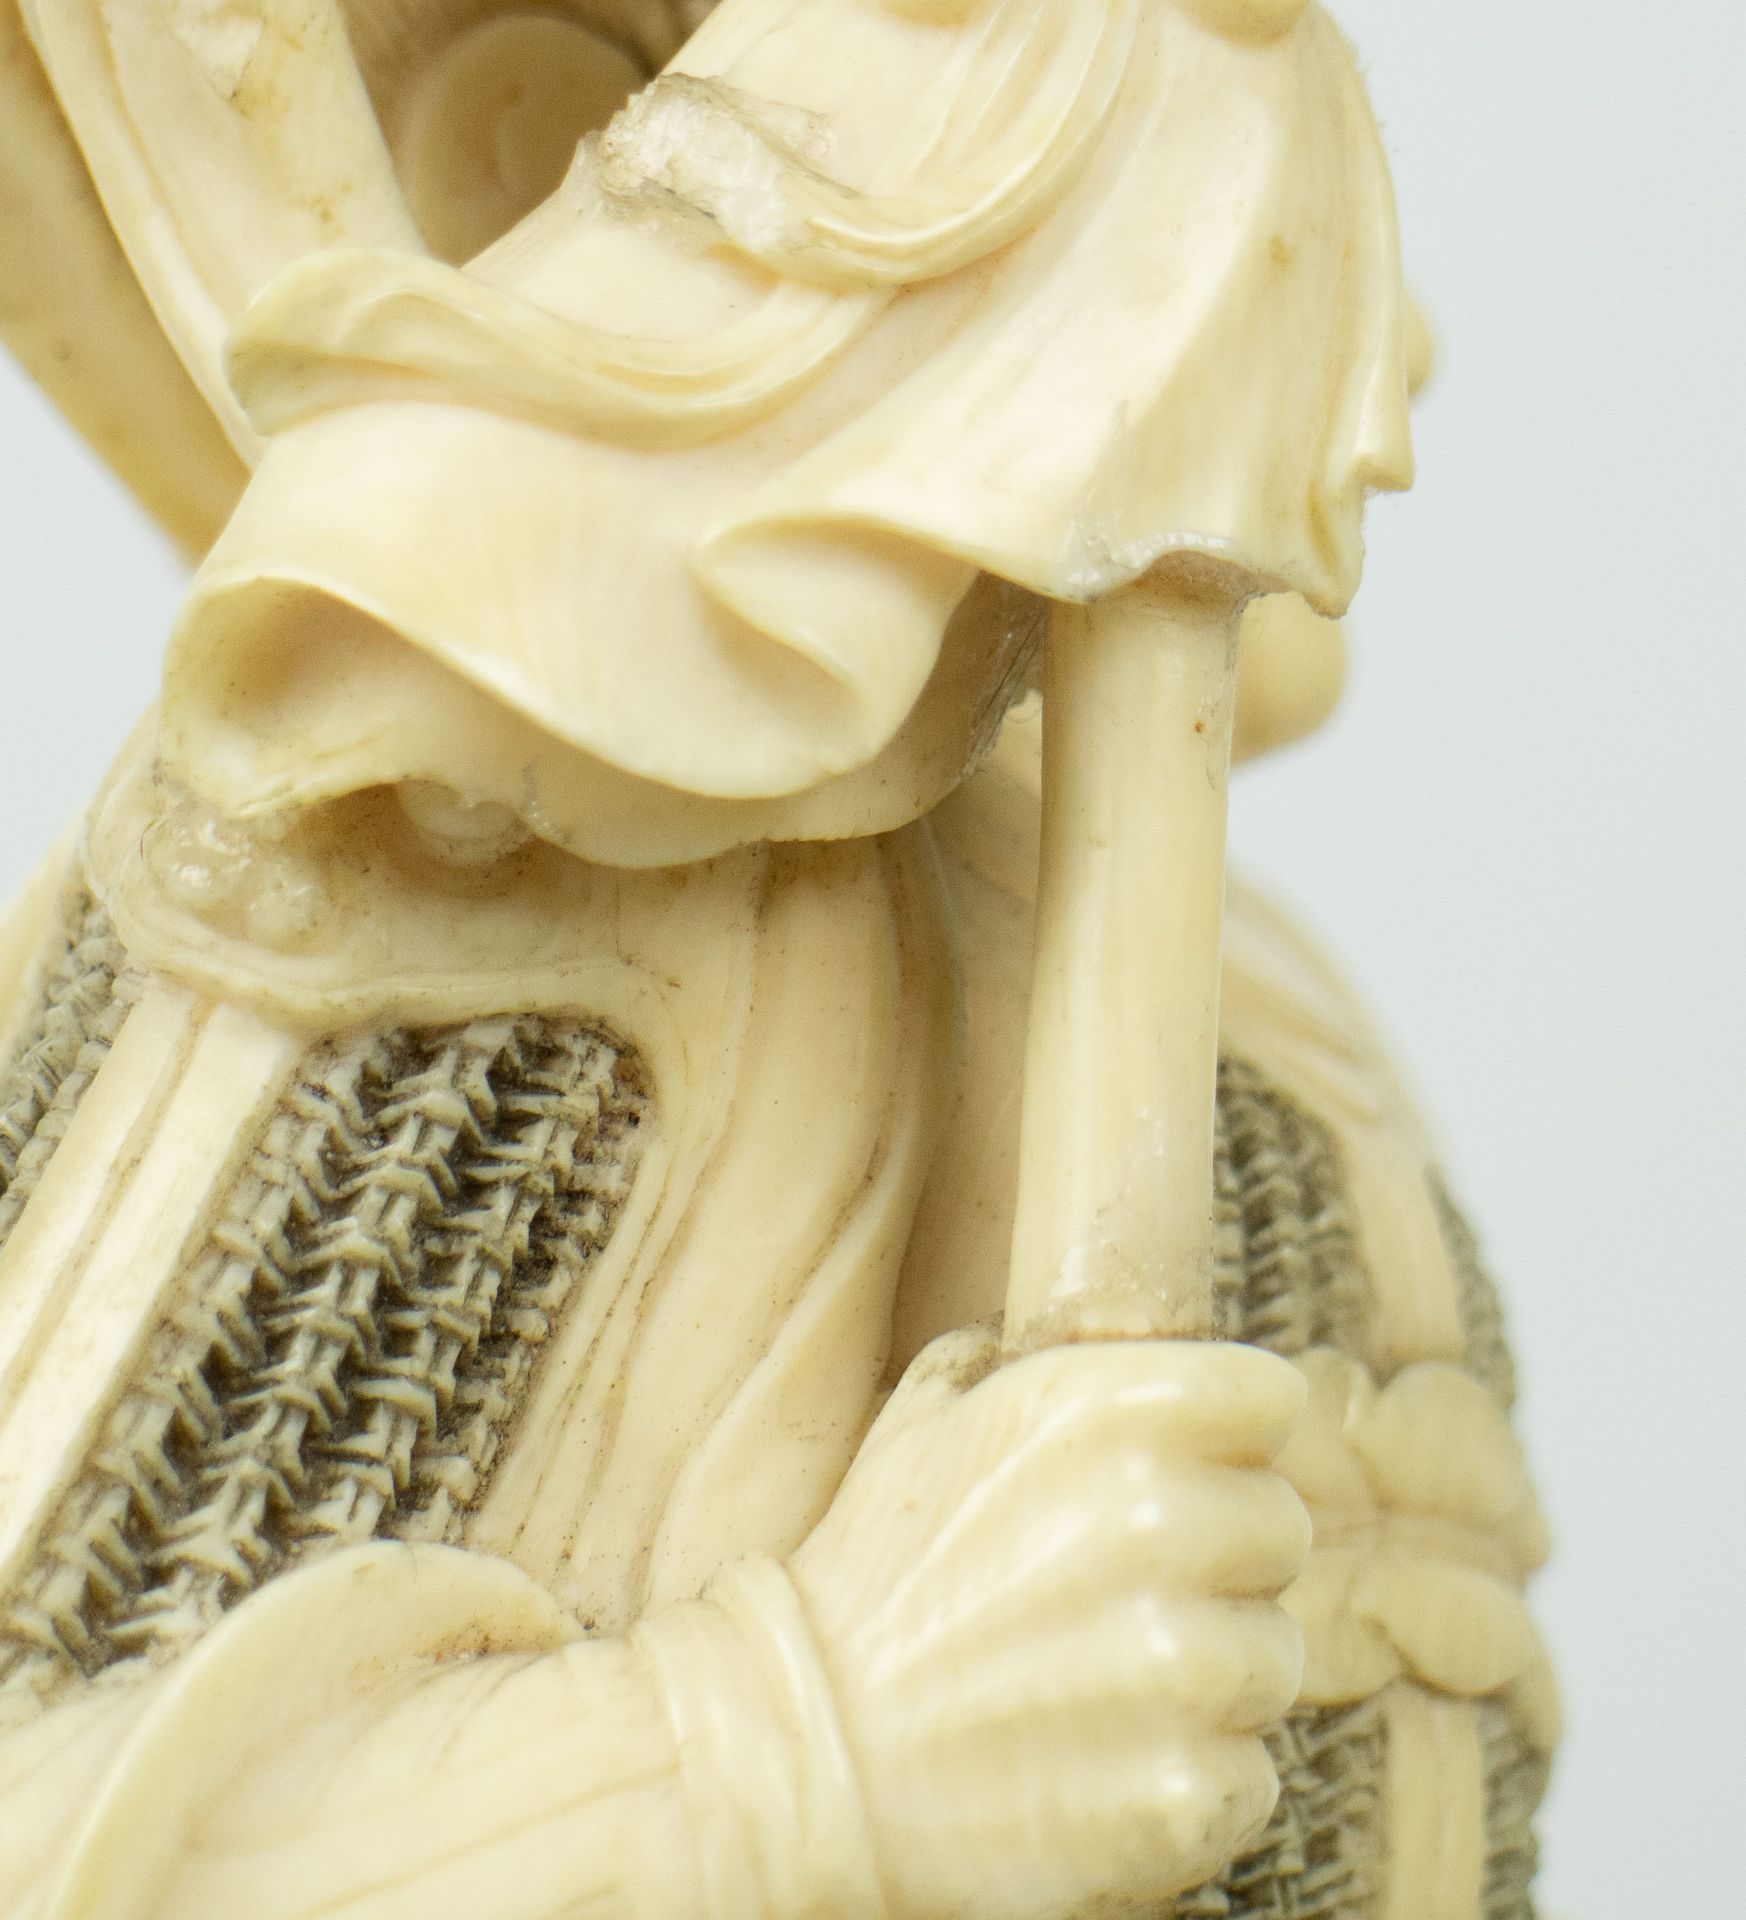 Ivory figure possibly depicting Ehr Lang Shen + cloisonné lidded vase - Image 6 of 6